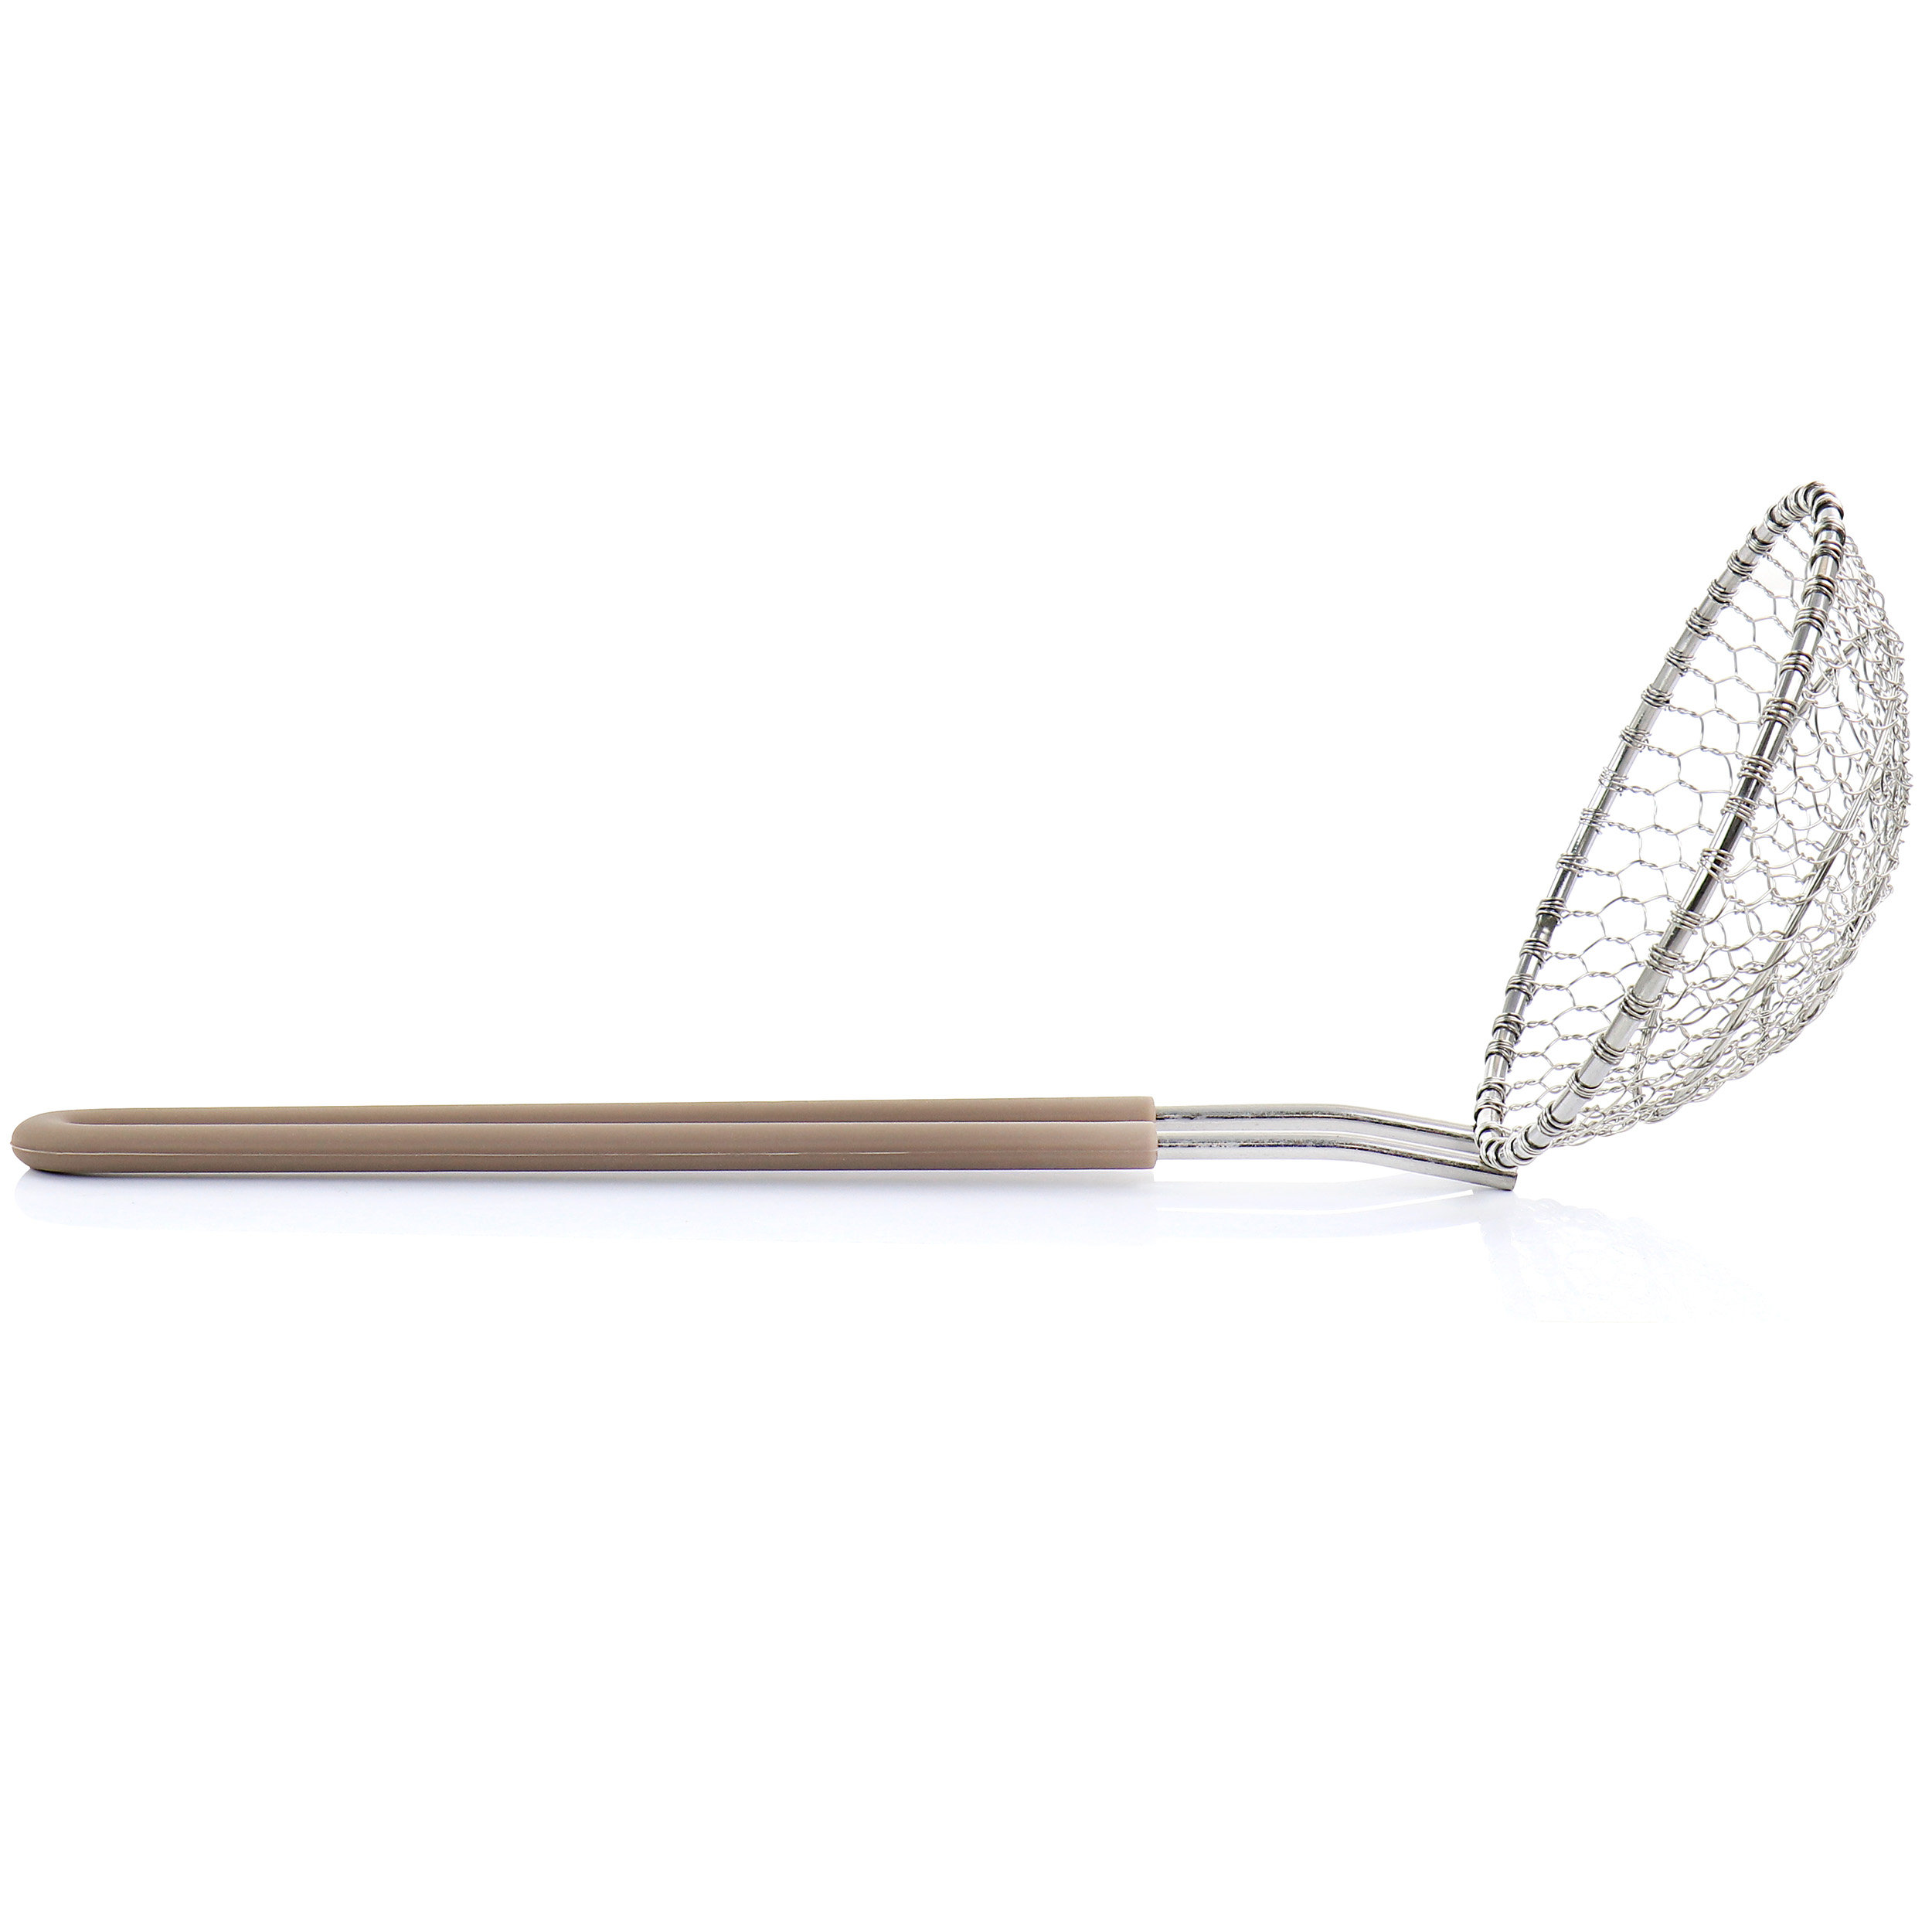 https://assets.wfcdn.com/im/29161325/compr-r85/2288/228805046/martha-stewart-stainless-steel-spider-skimmer-kitchen-utensil-with-nylon-handle-in-light-taupe.jpg